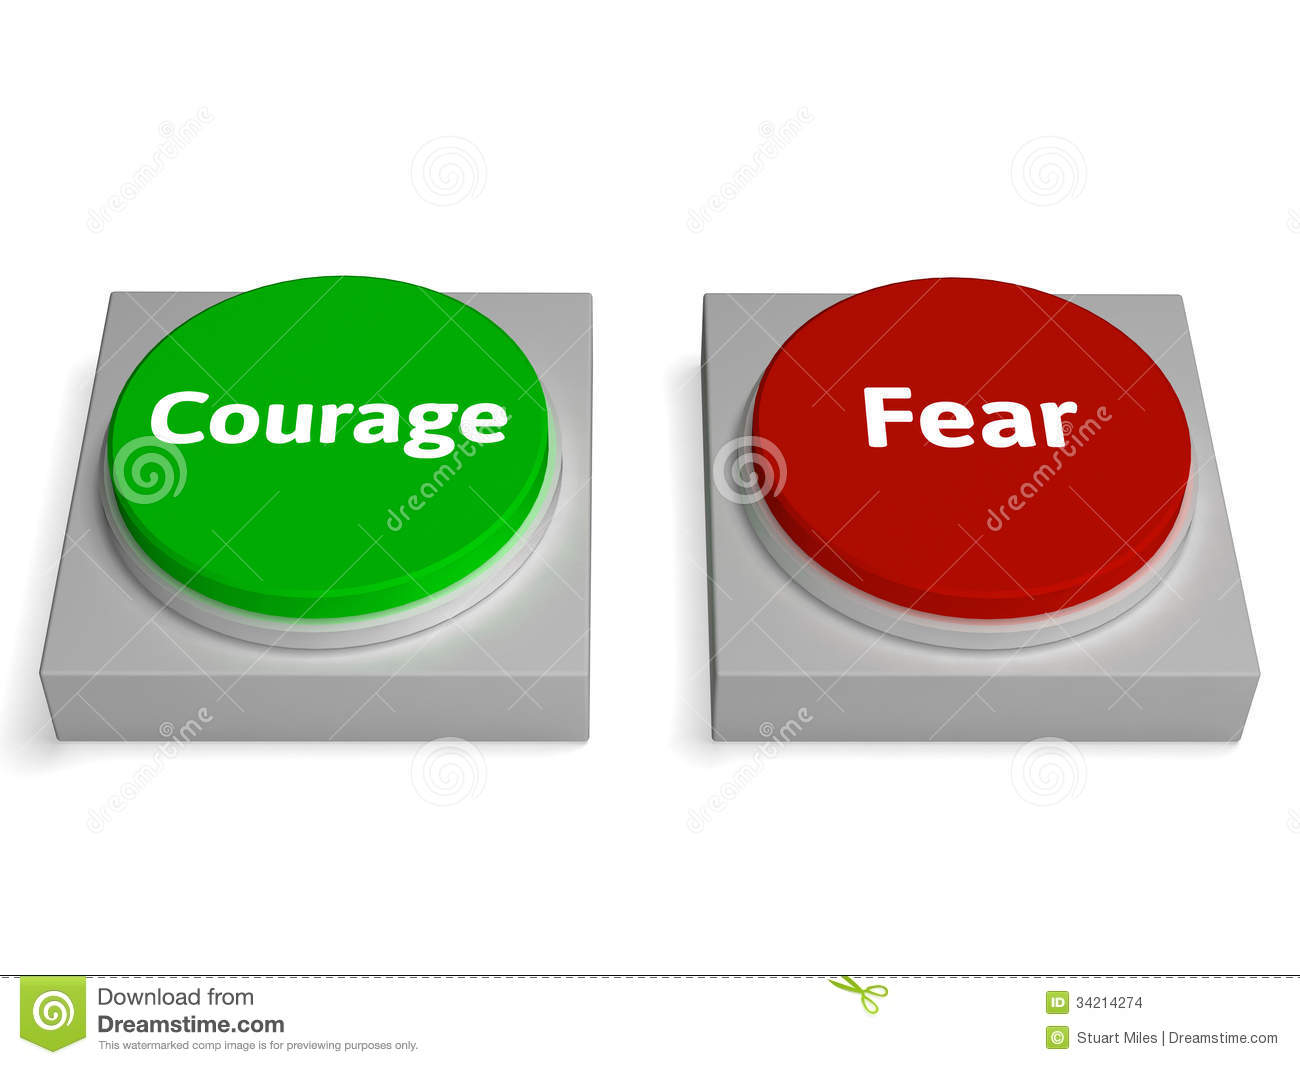 Смелость - понятие, проявление, развитие смелости